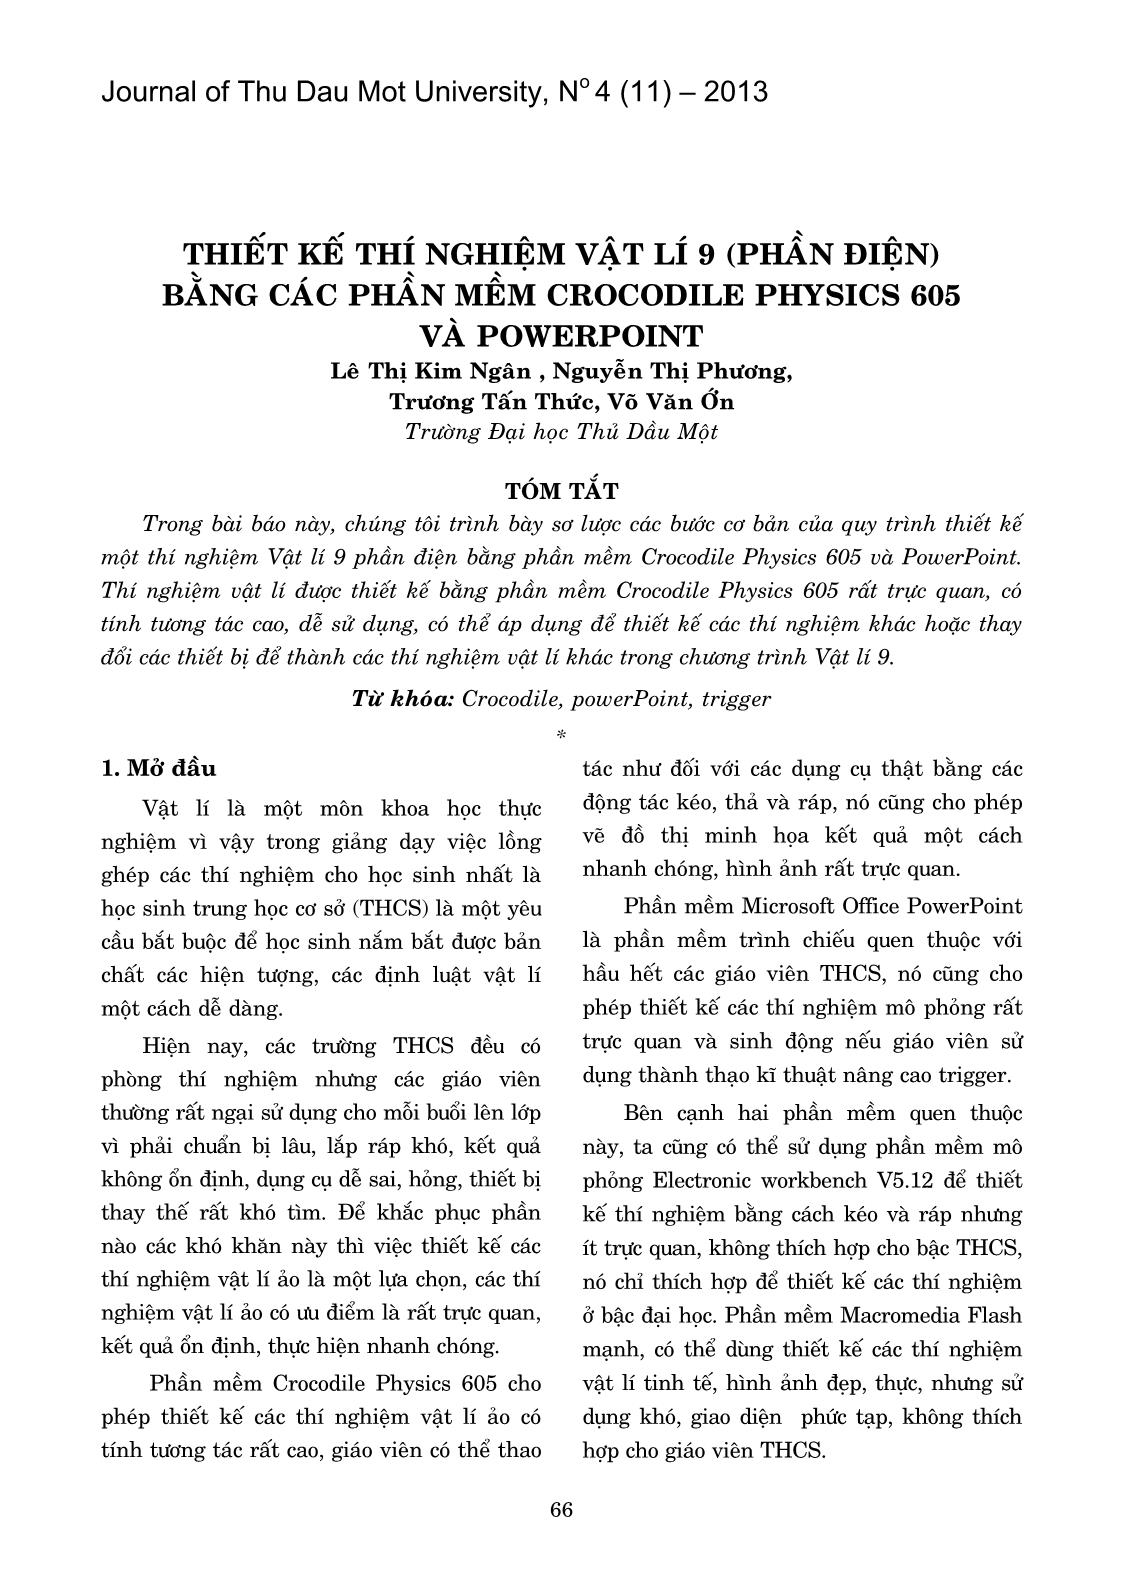 Thiết kế thí nghiệm Vật lí 9 (Phần điện) bằng các phần mềm Crocodile Physics 605 và Powerpoint trang 1